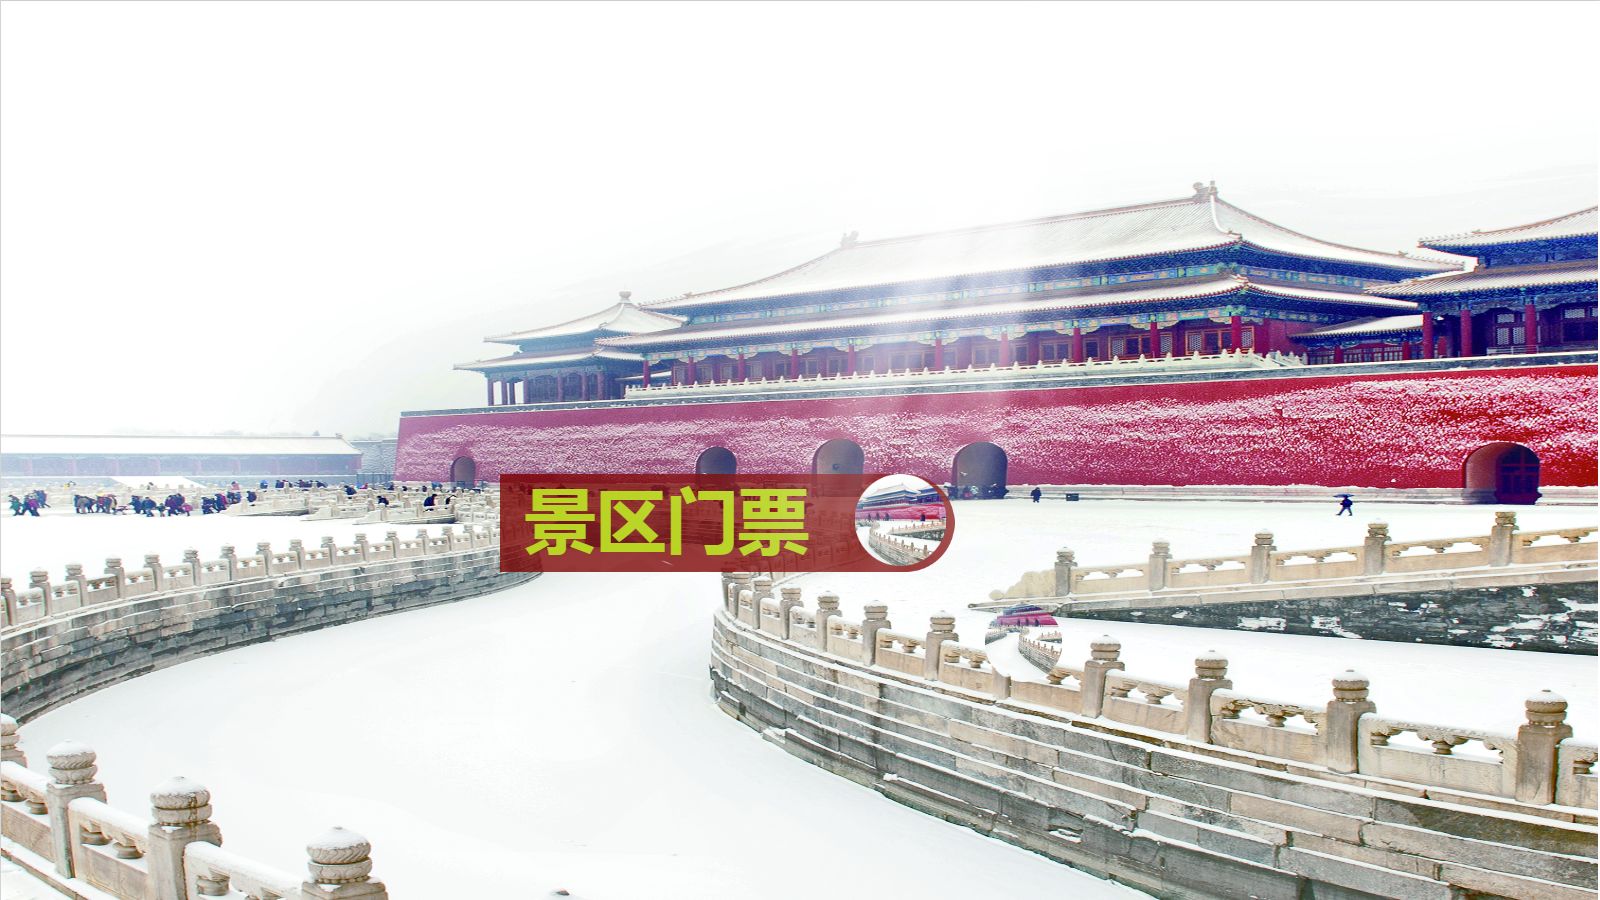 故宫的雪北京旅游促销海报.jpg